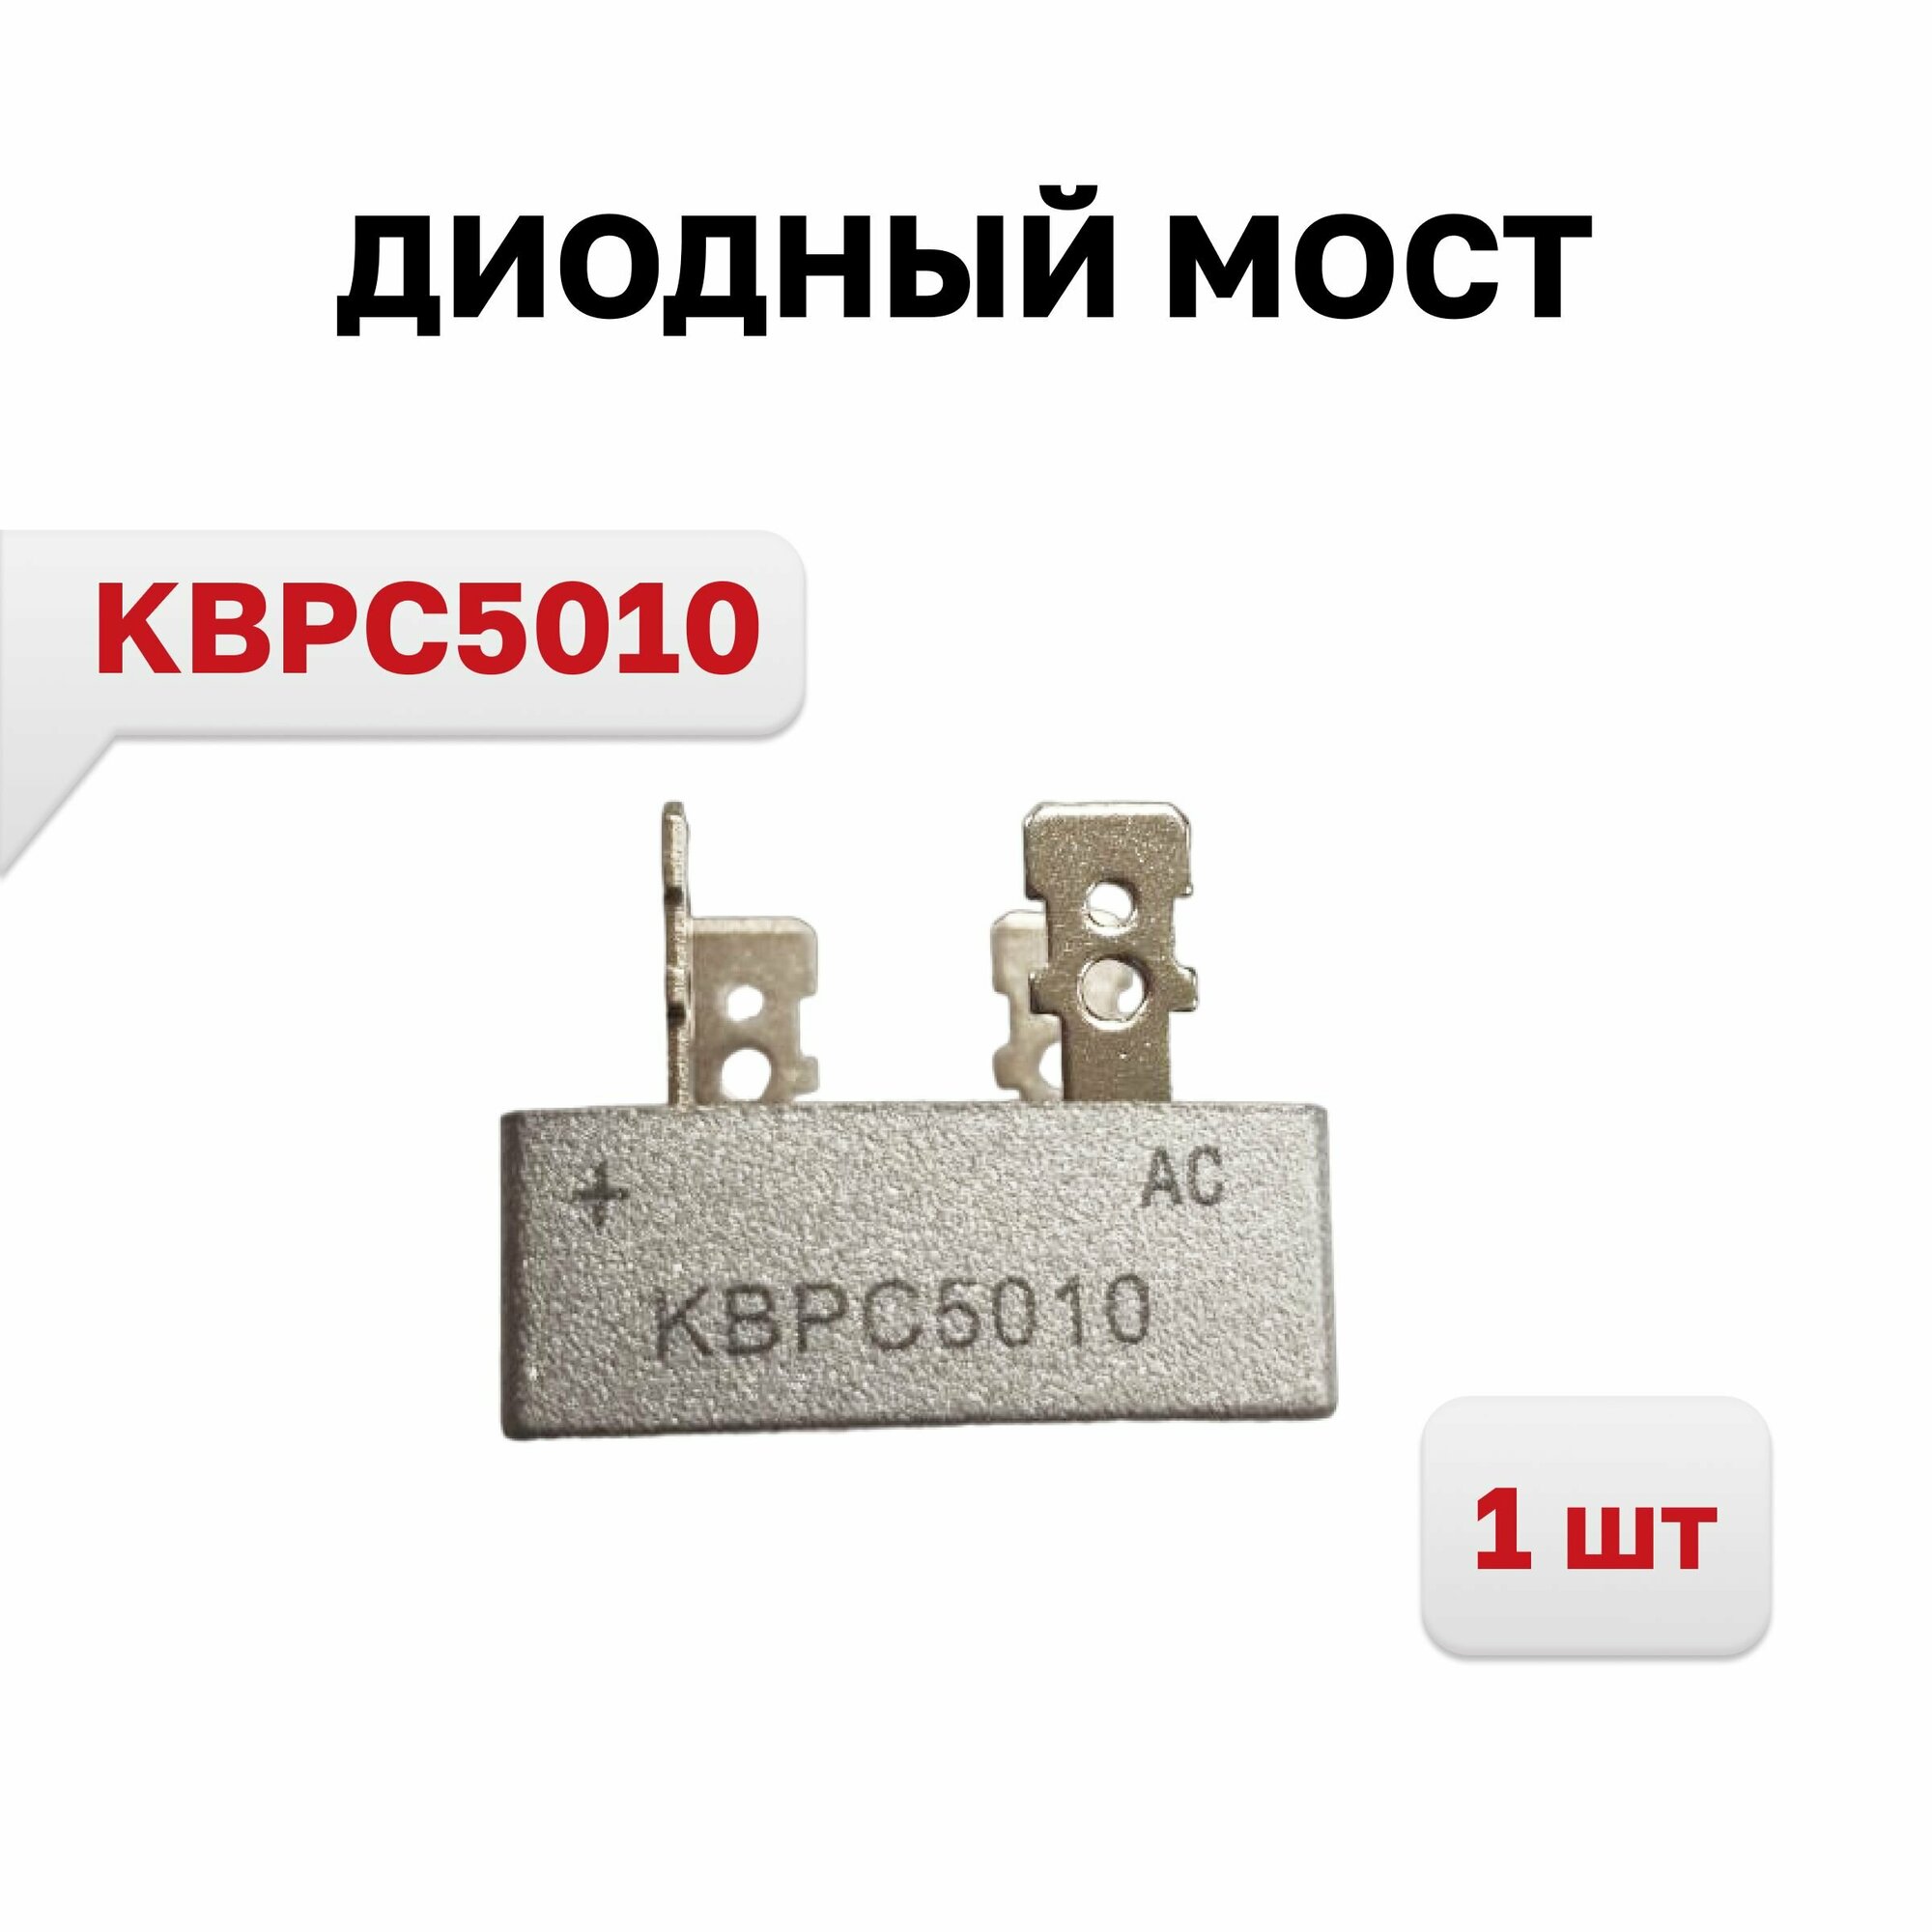 Диодный мост KBPC5010 50A 1000V, 1 шт.